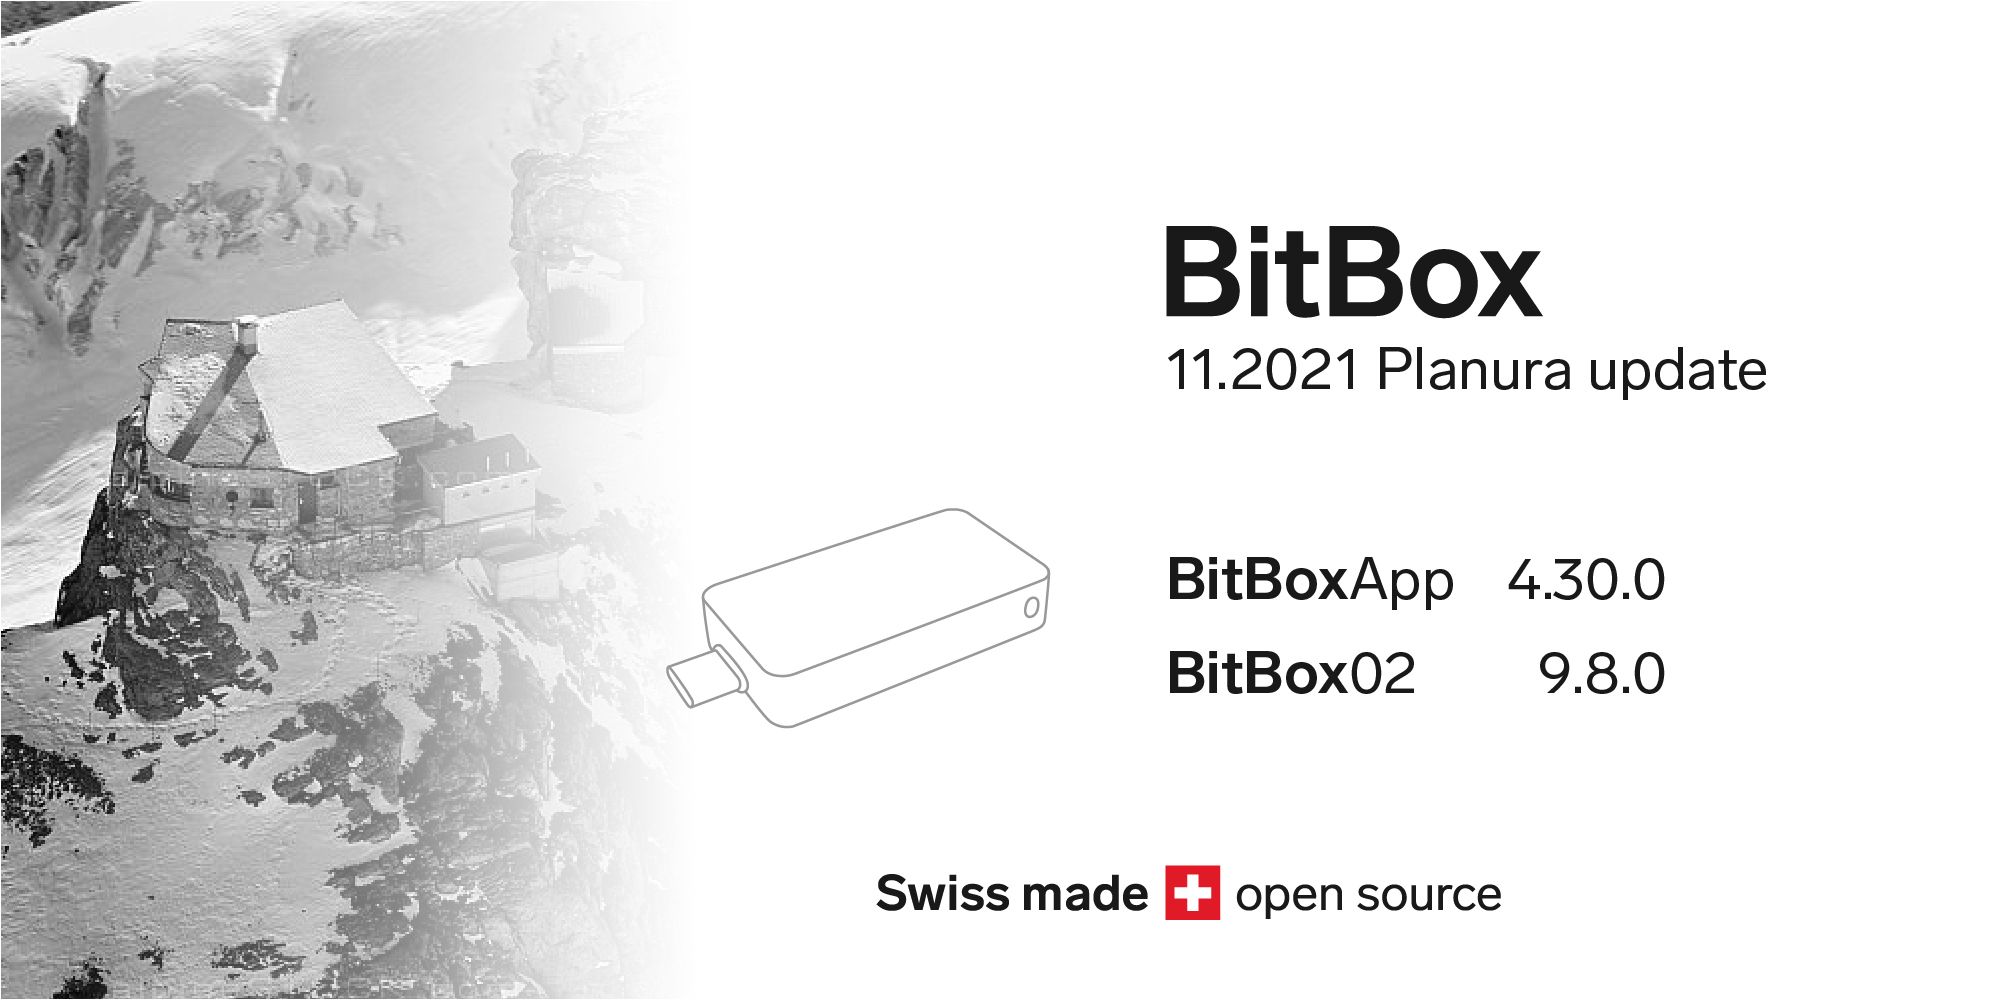 BitBox 11.2021 Planura update